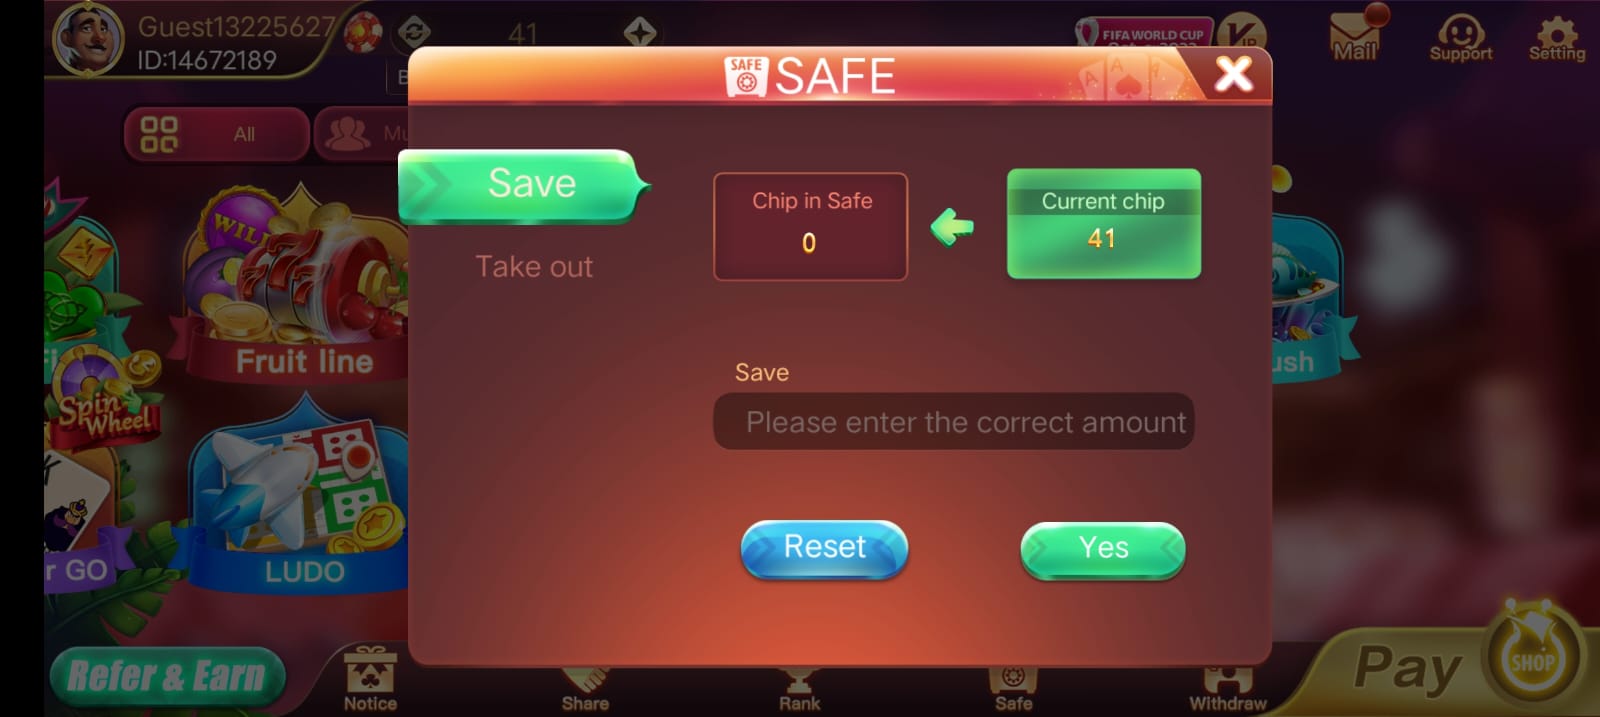 Safe Button Program In Rummy Wealth App